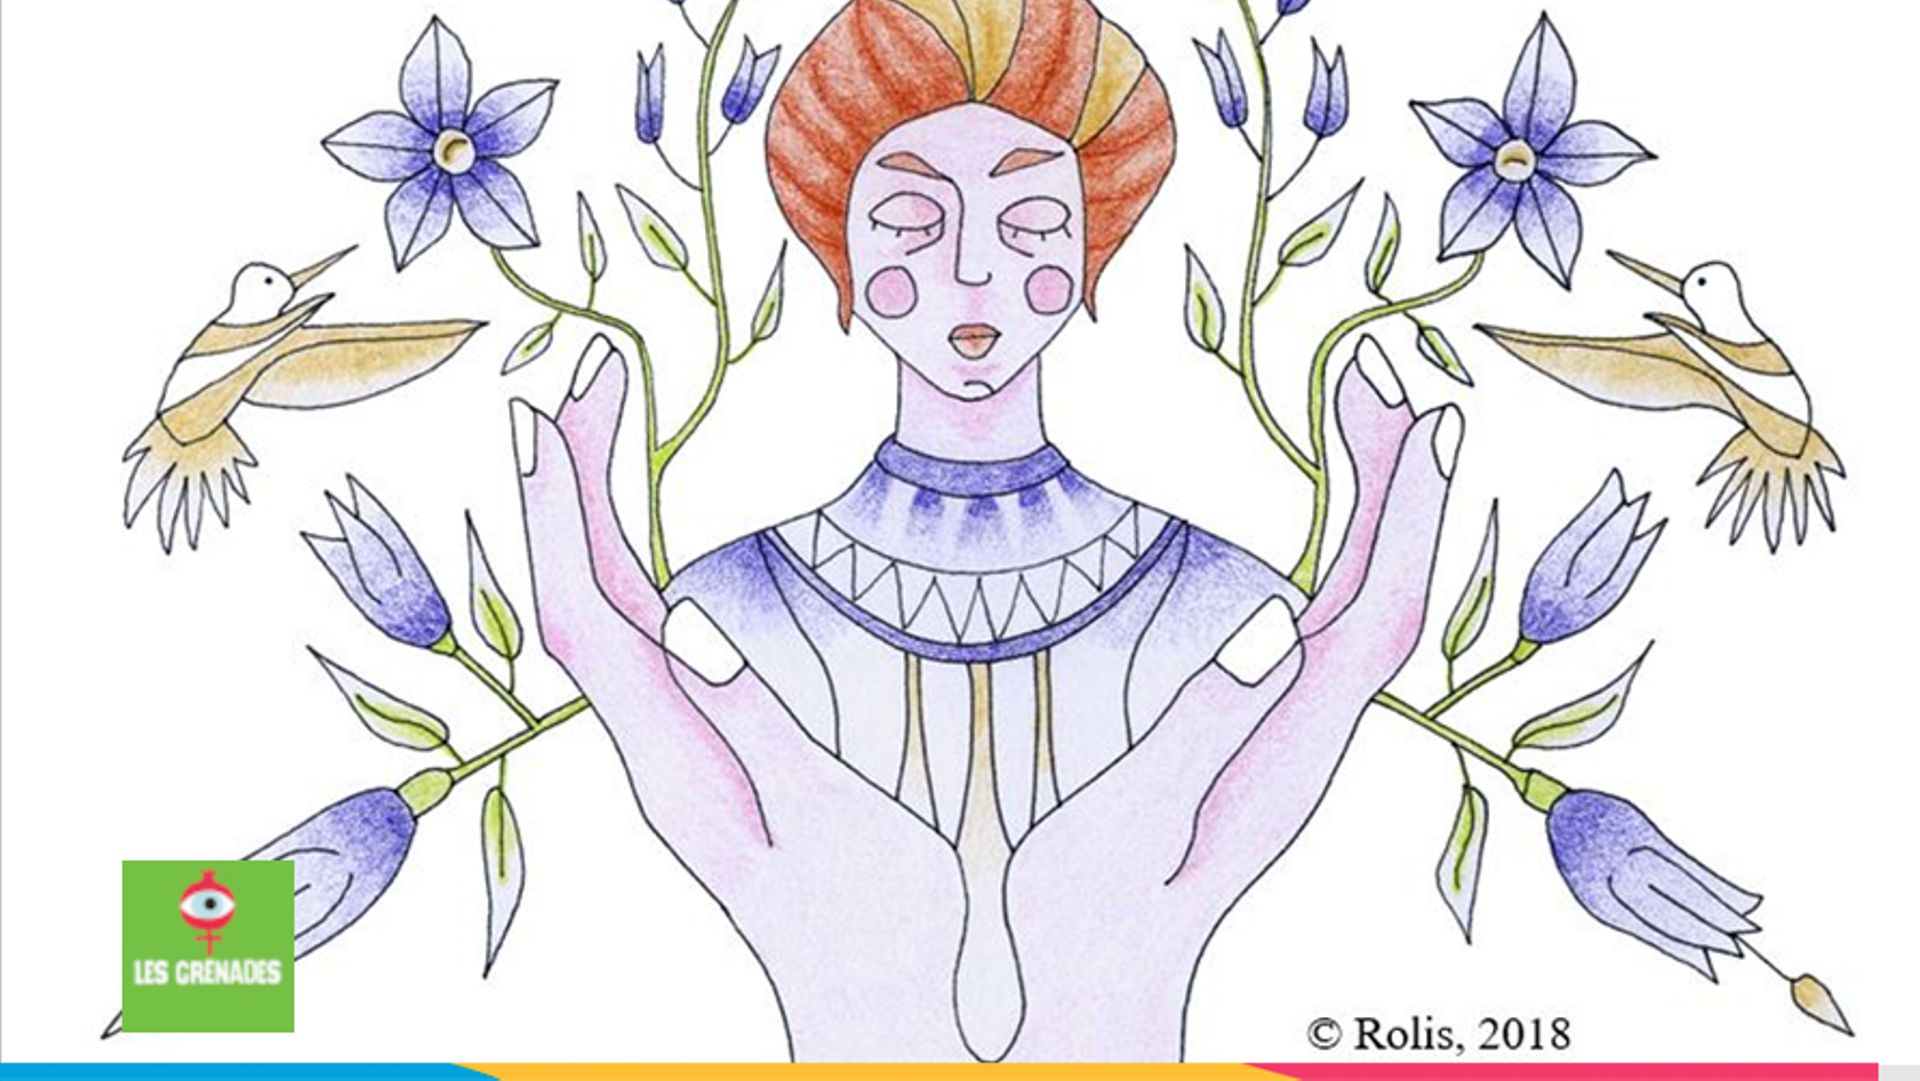 Illustration représentant Helen Keller, une autrice, conférencière et militante politique sourdaveugle américaine, cette illustration a initialement été publiée dans le magazine Axelle.